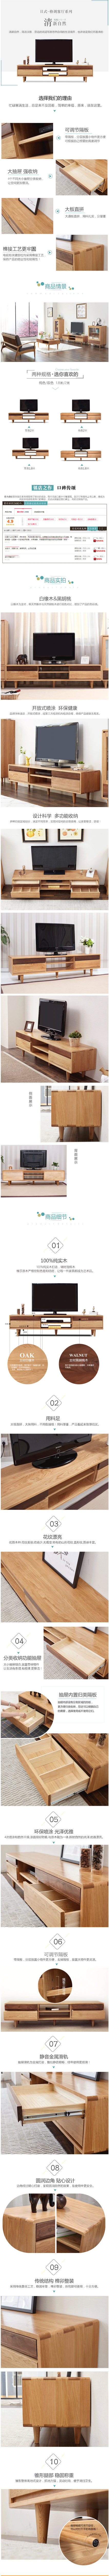 淘宝美工子朗日式纯实木电视柜 家居家纺作品